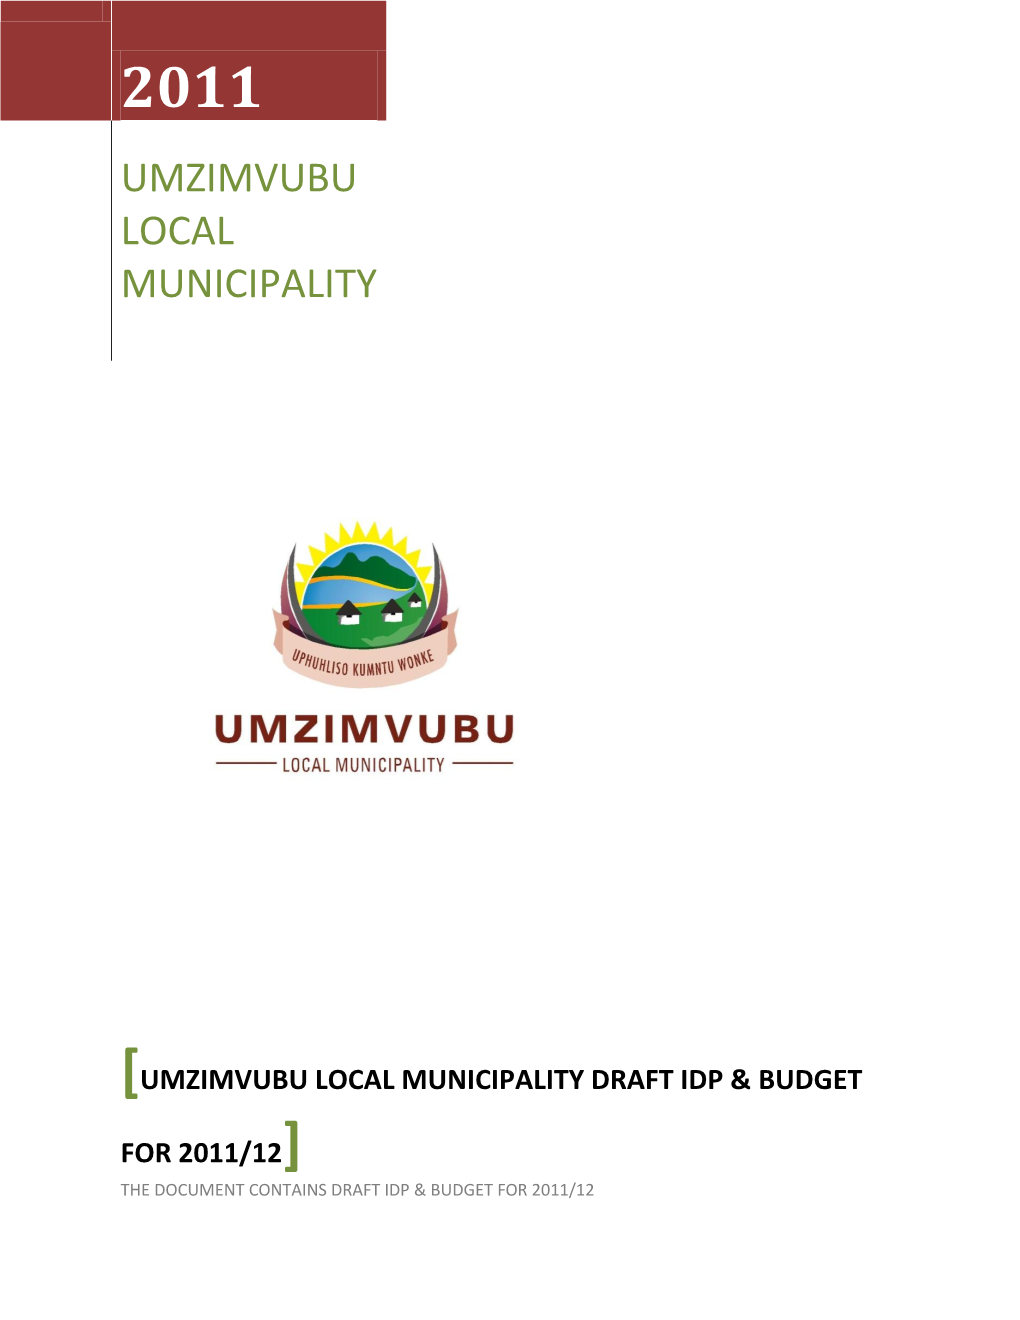 Umzimvubu Local Municipality Draft Idp & Budget for 2011/12